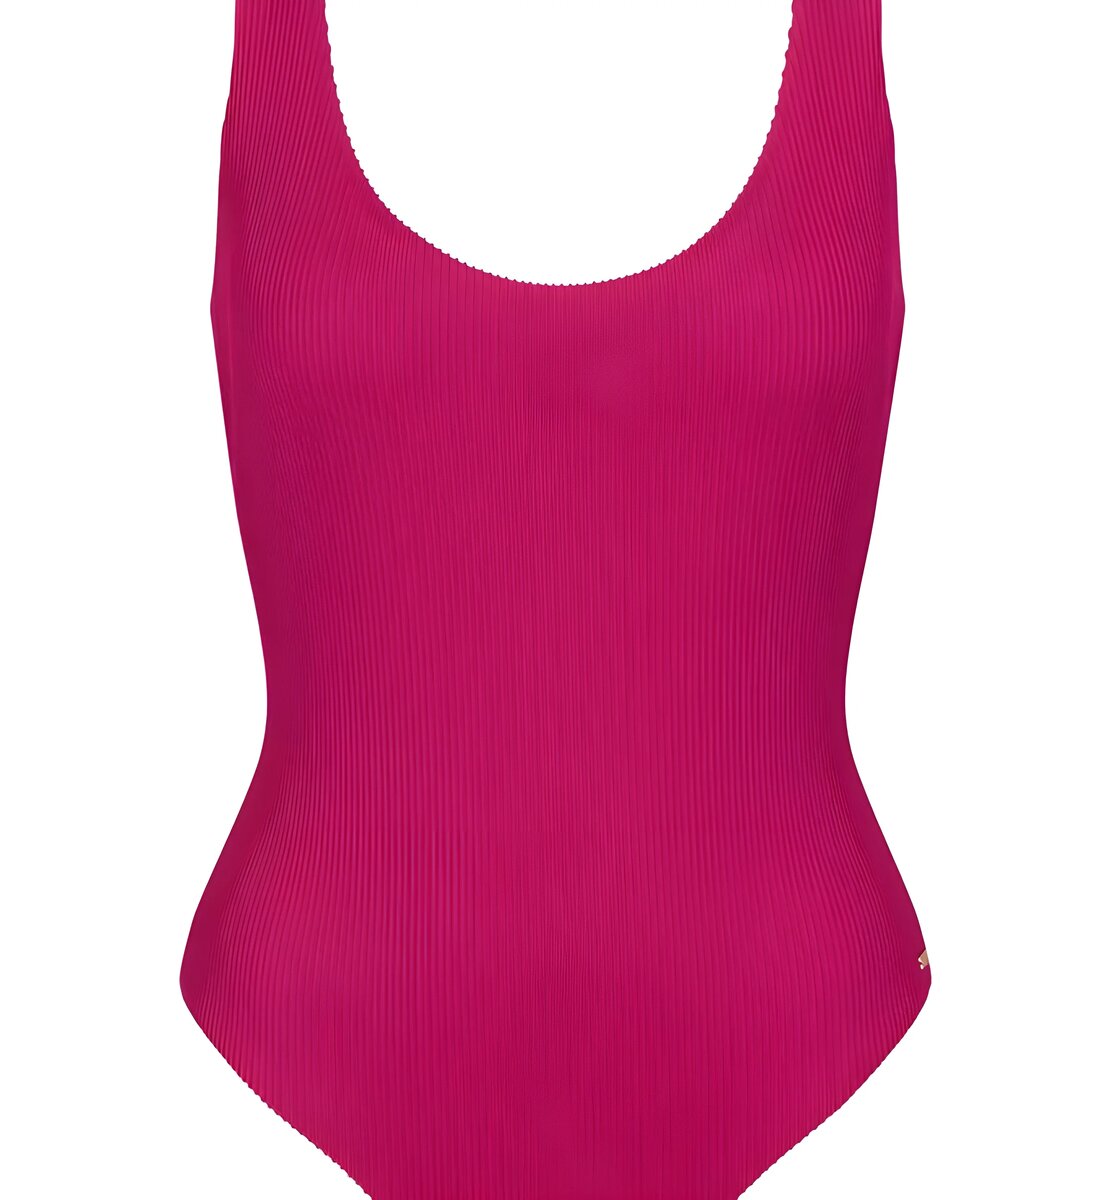 Dámské jednodílné plavky swim Pink Summer Tai E38B3 S8A3 - Sloggi Triumph, světlá kombinace růžové (M019) 0042 i147_65516351